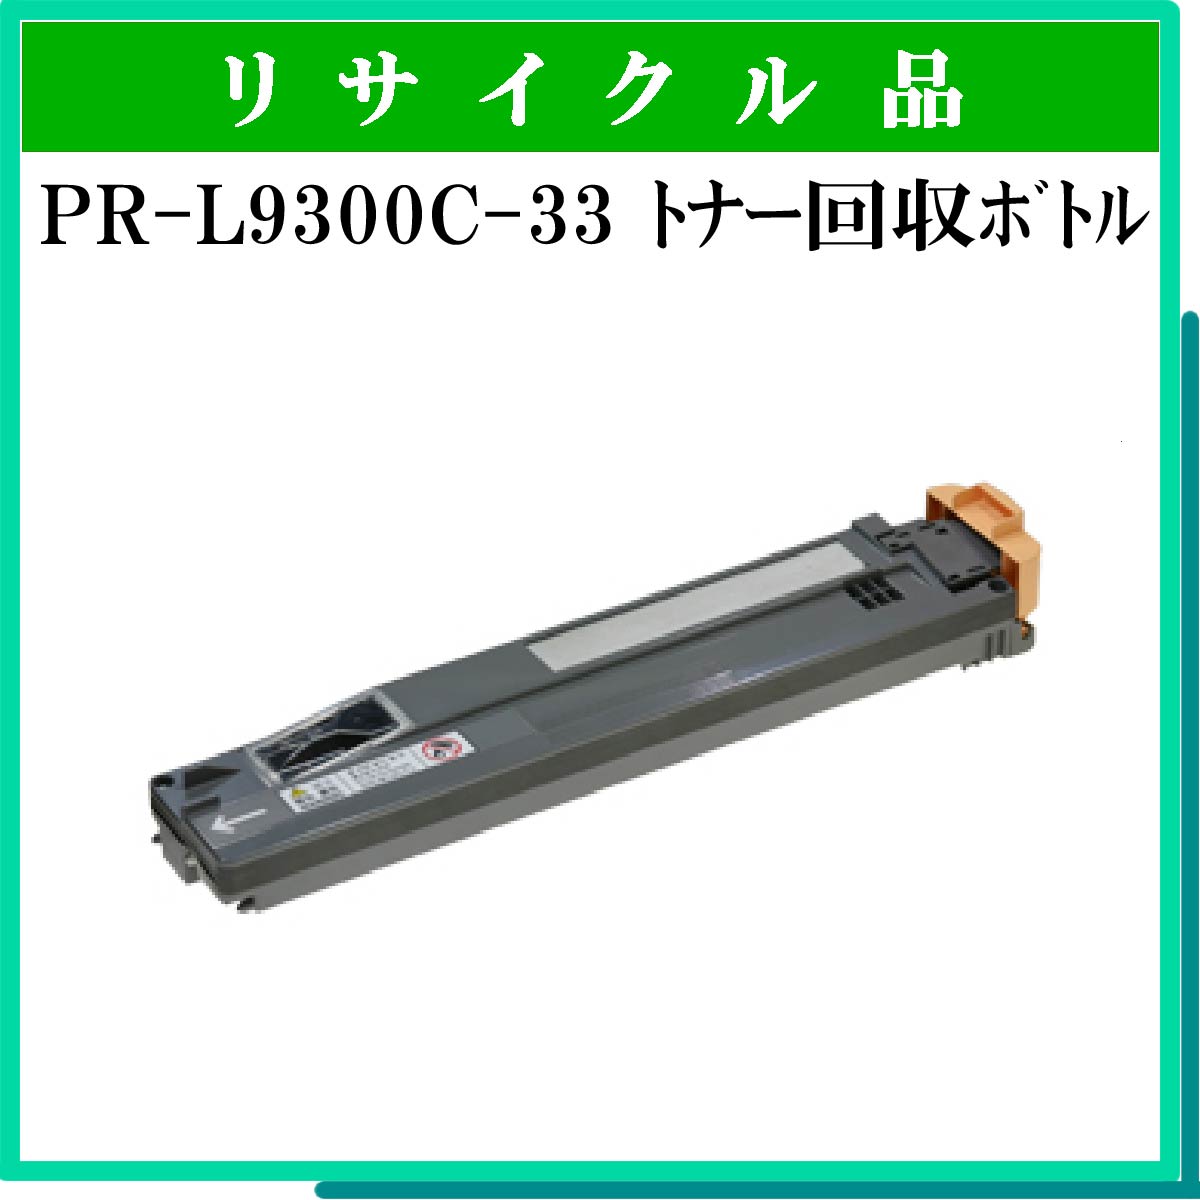 PR-L9300C-33